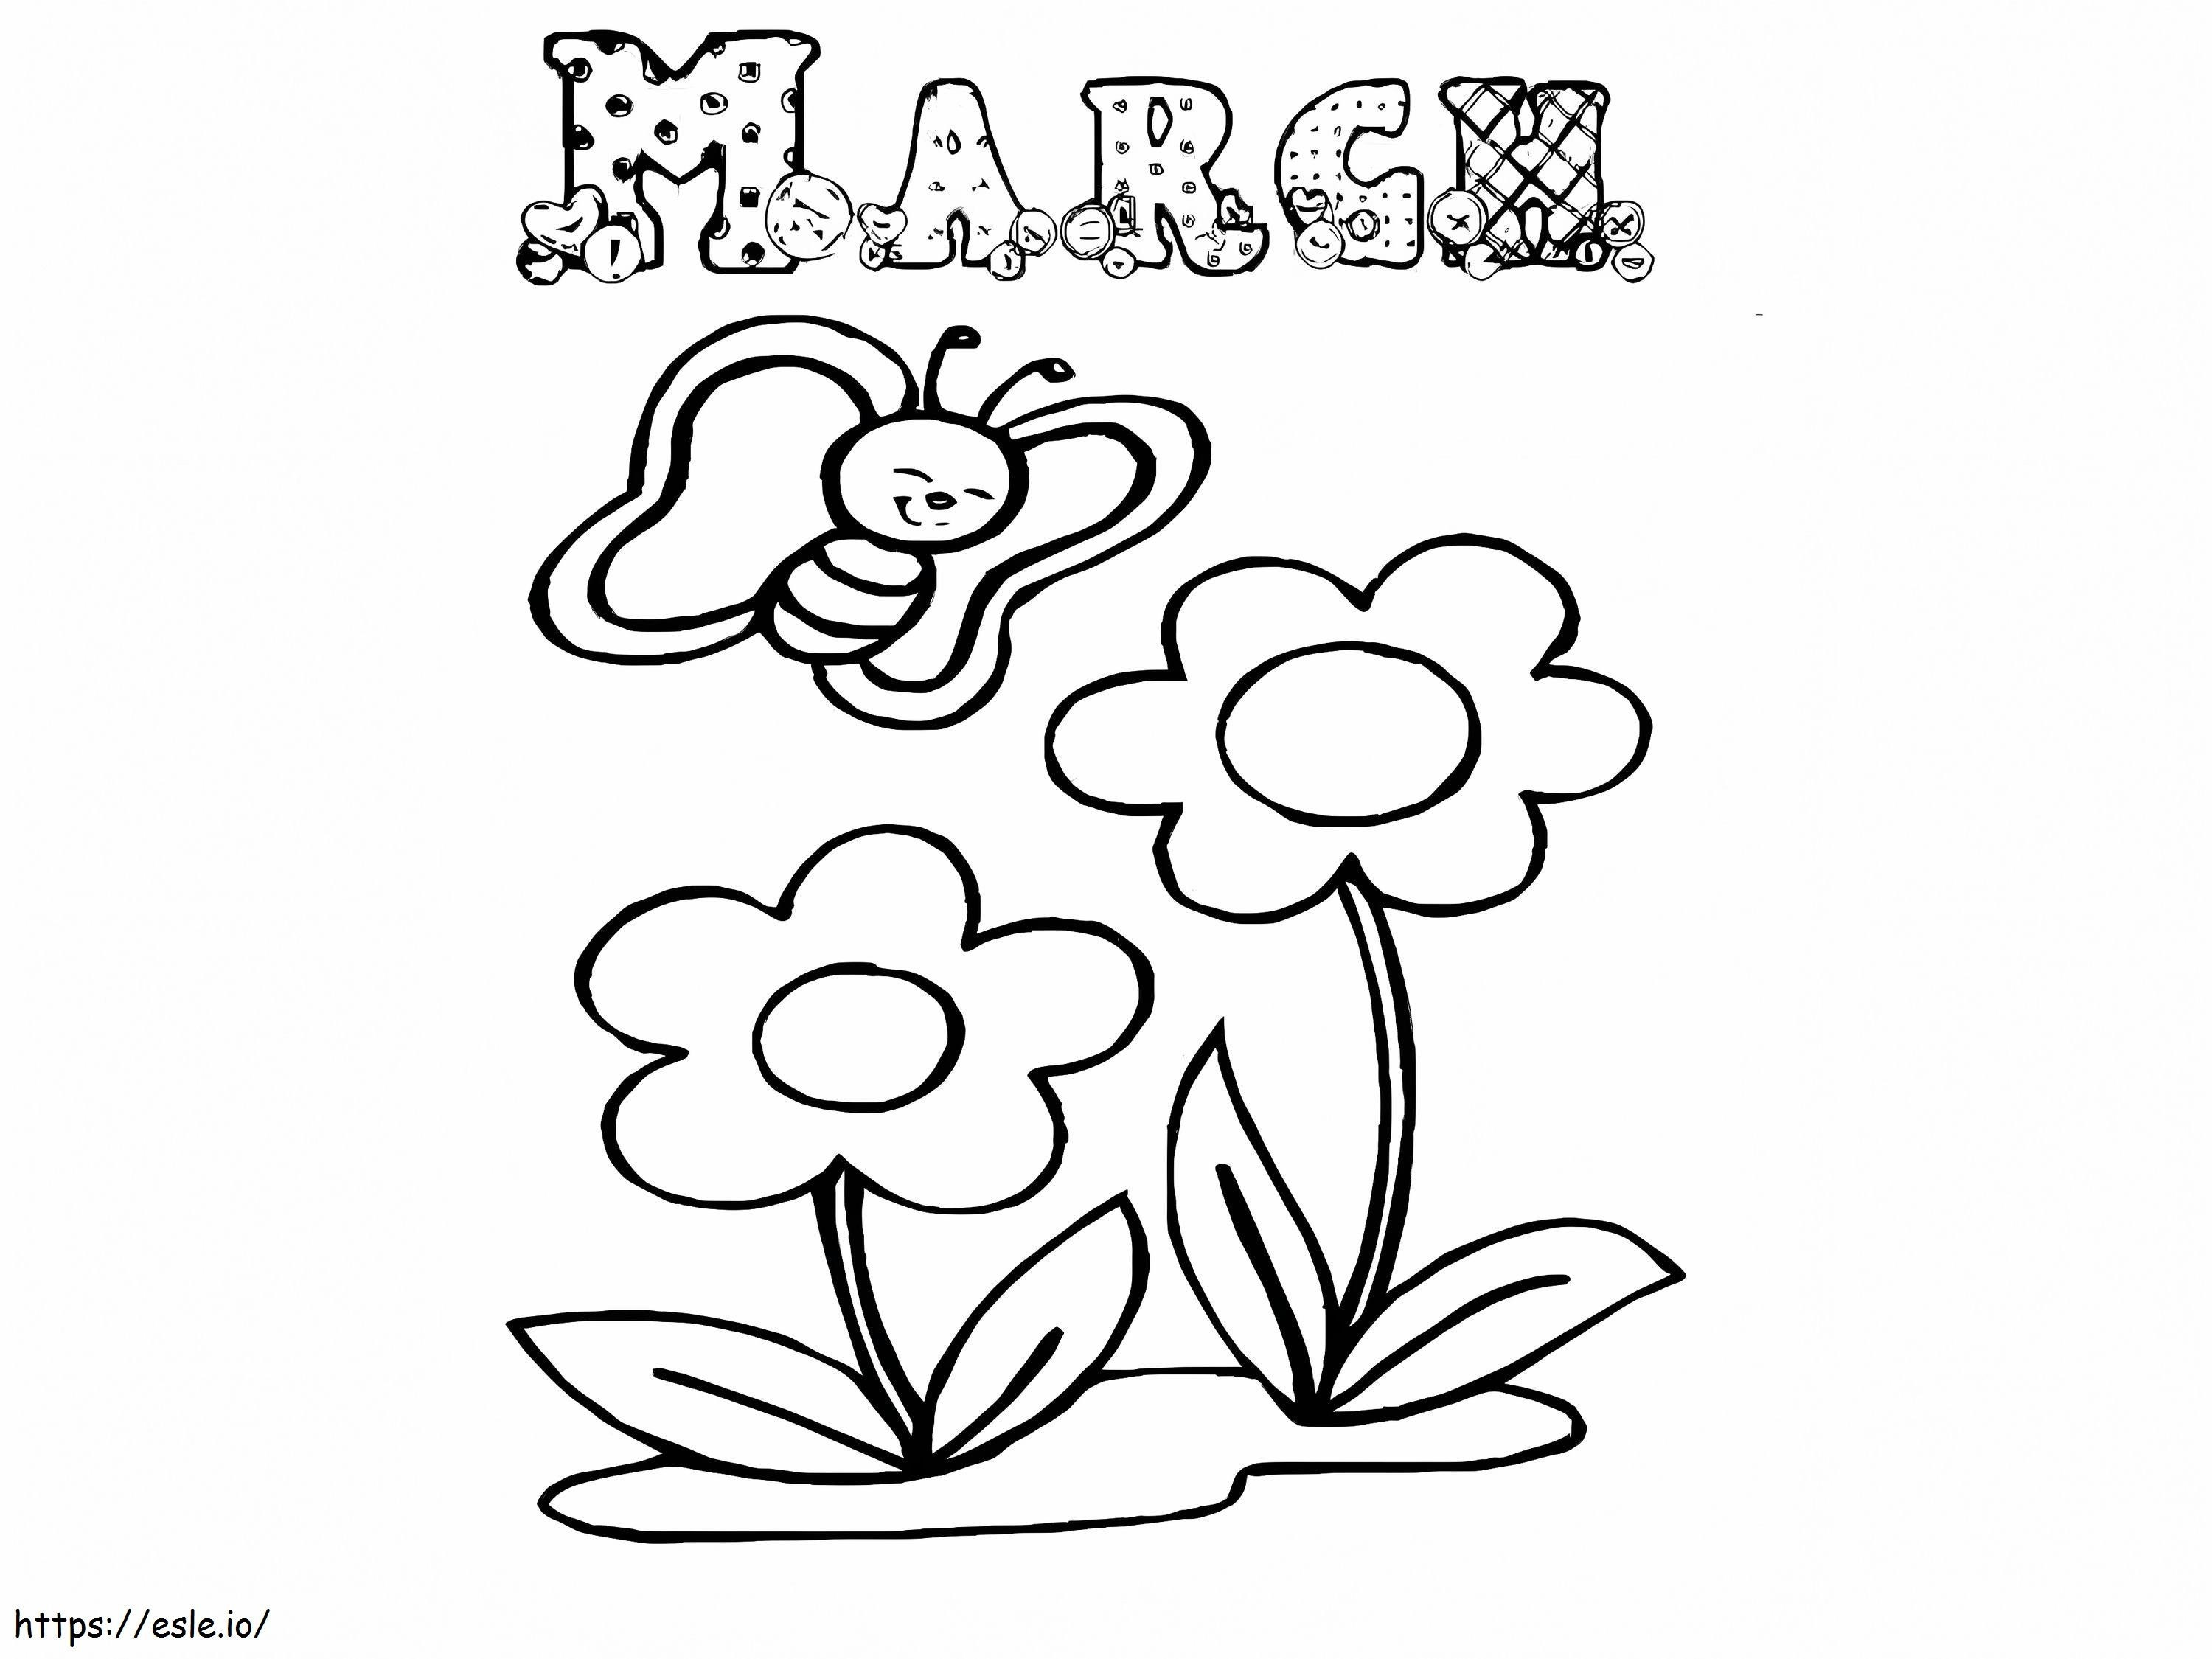 Buon marzo con il fiore da colorare